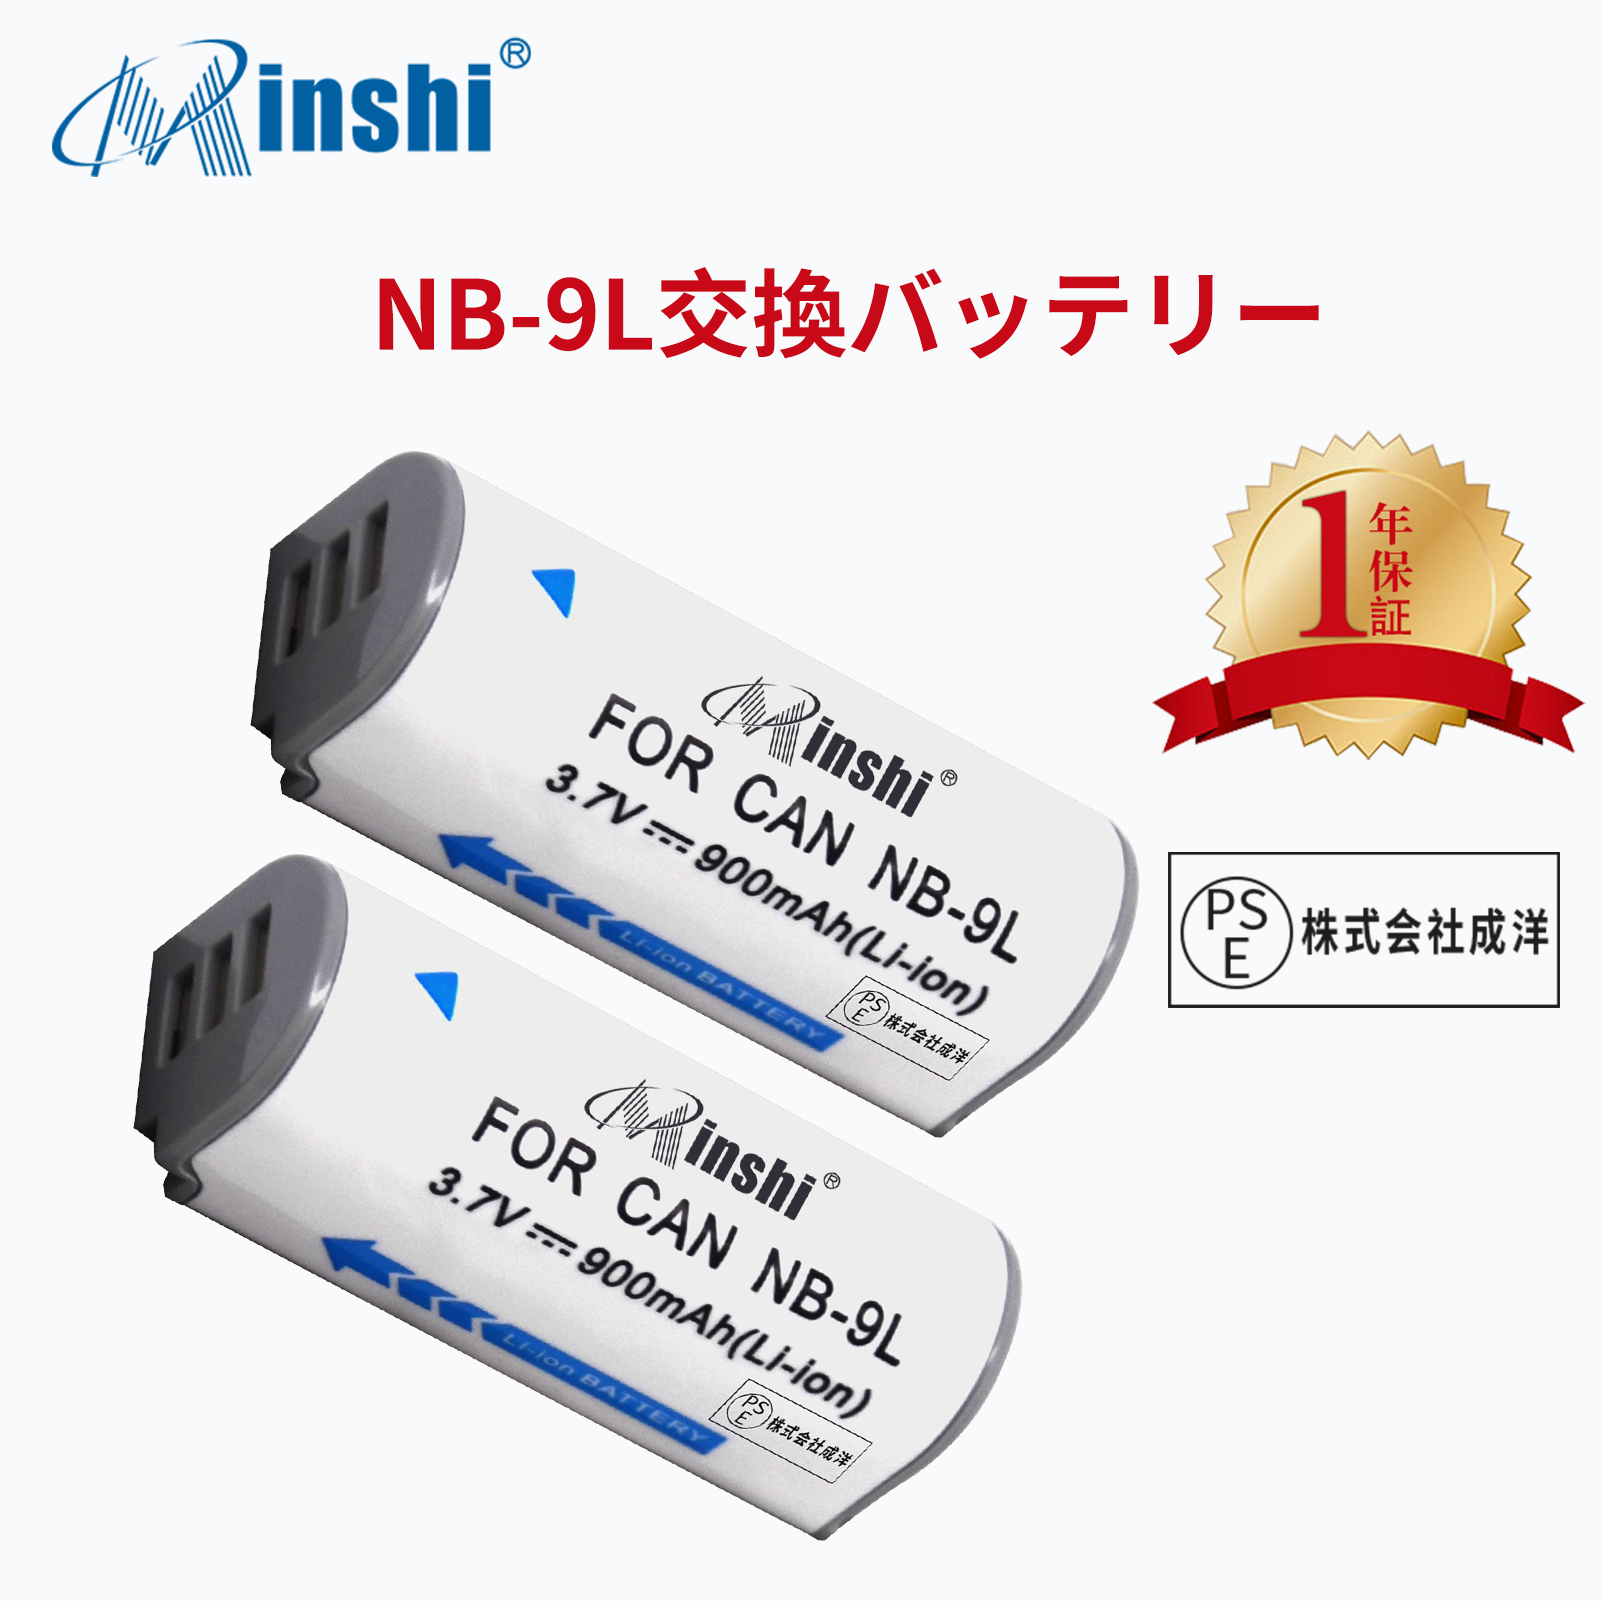 【２個セット】minshi Panasonic PowerShot N NB-9L 【900mAh 3.7V】PSE認定済 高品質交換用バッテリー